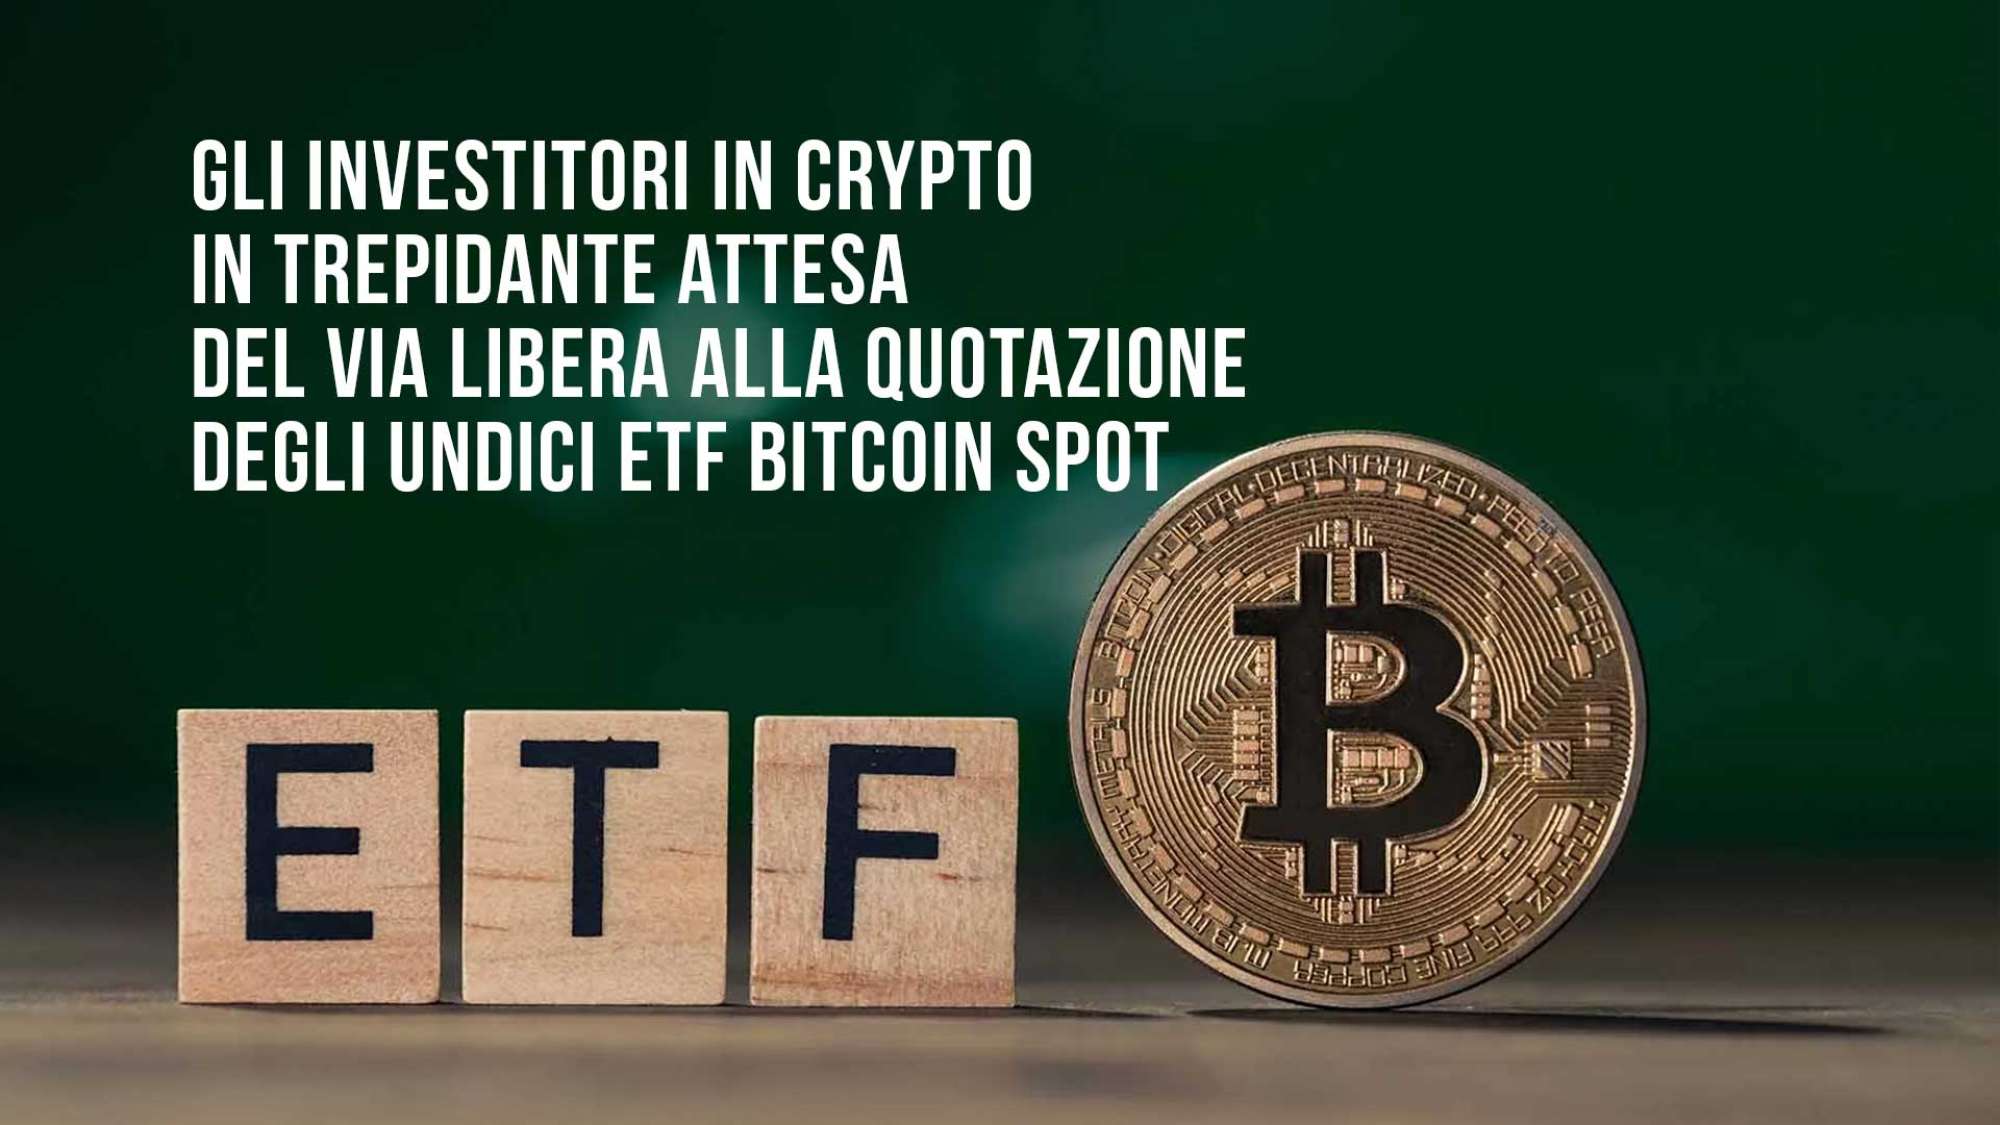 Gli investitori in crypto in trepidante attesa del via libera alla quotazione degli undici ETF Bitcoin spot